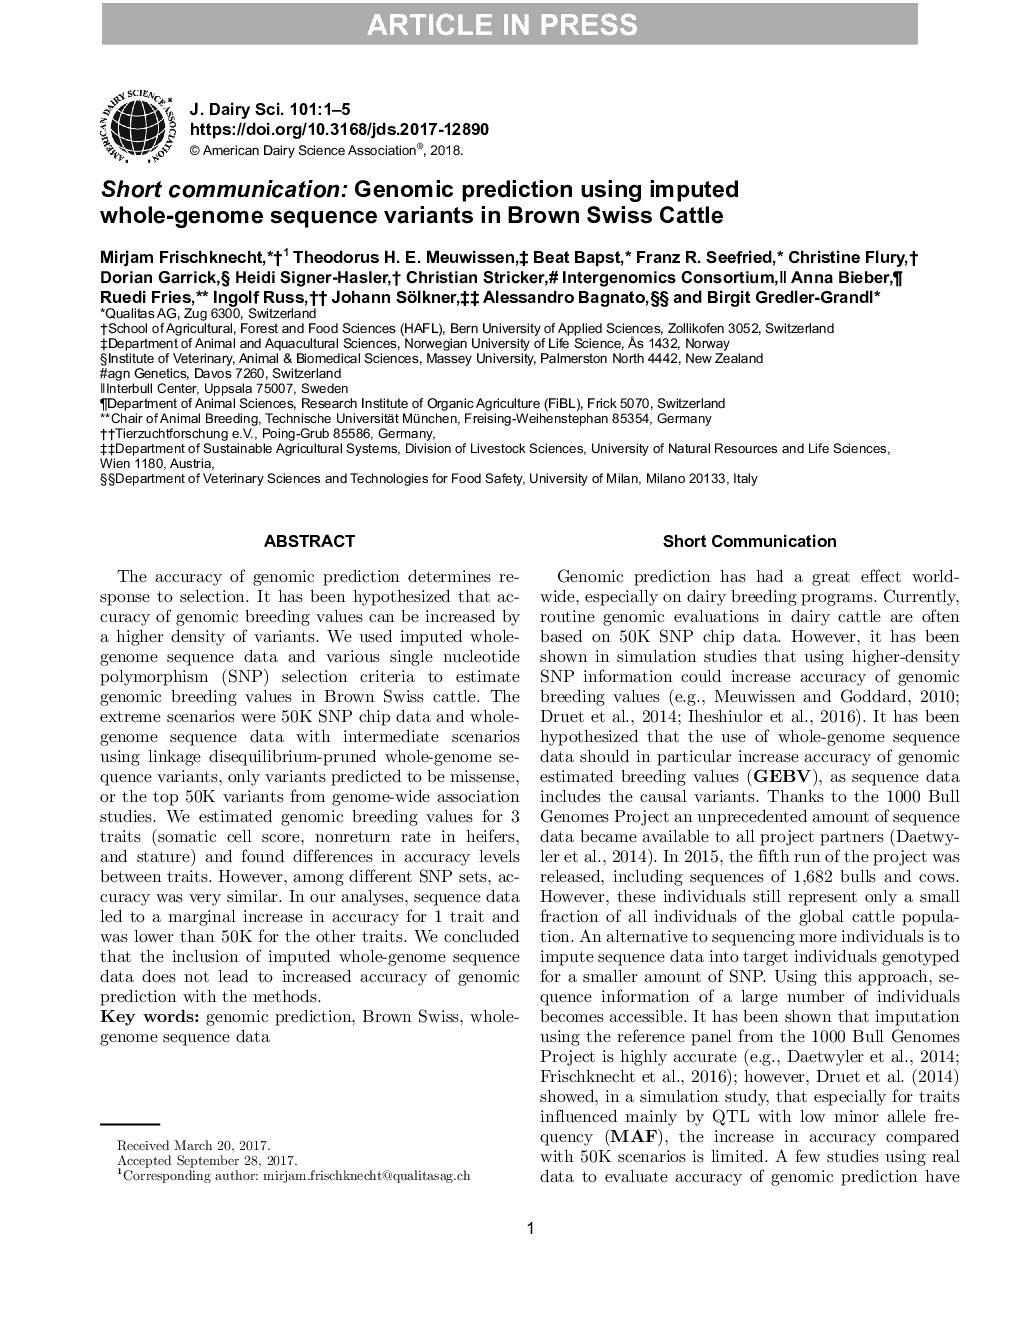 ارتباطات کوتاه: پیش بینی ژنومیک با استفاده از محدوده توالی کامل ژنوم در گاو بروس سوئیس 